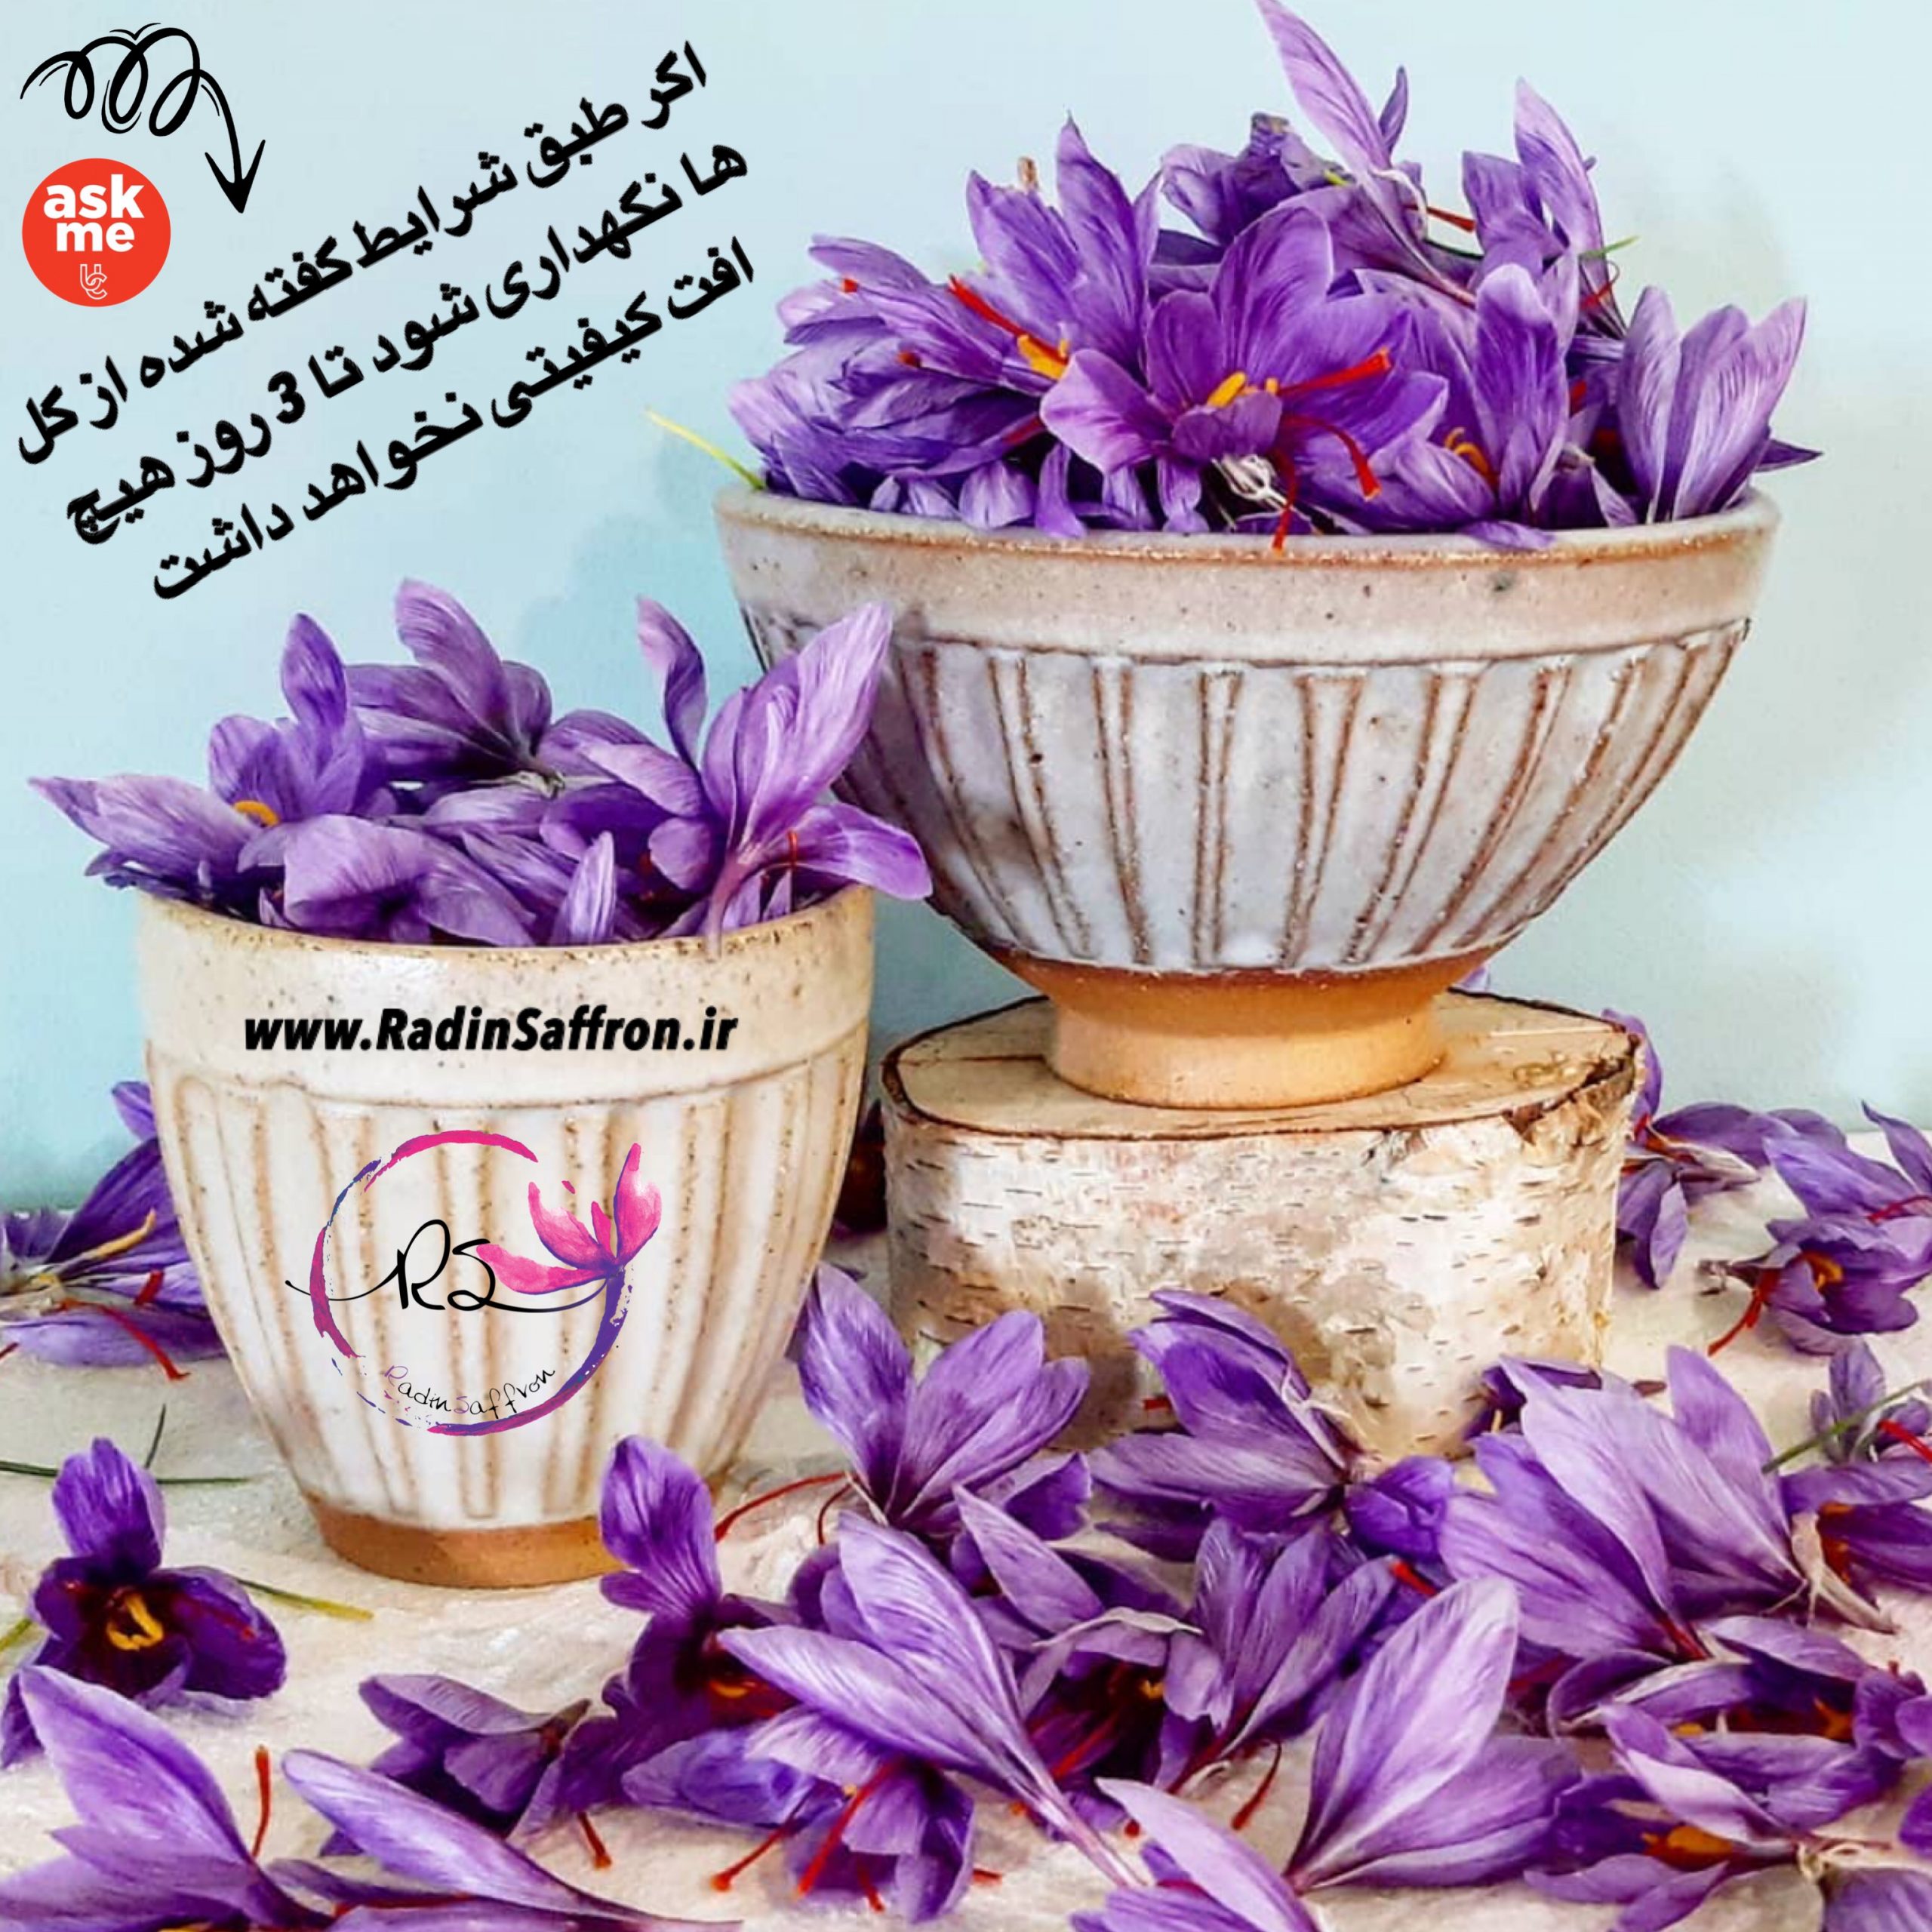 افت کیفیت در گل های زعفران ایران